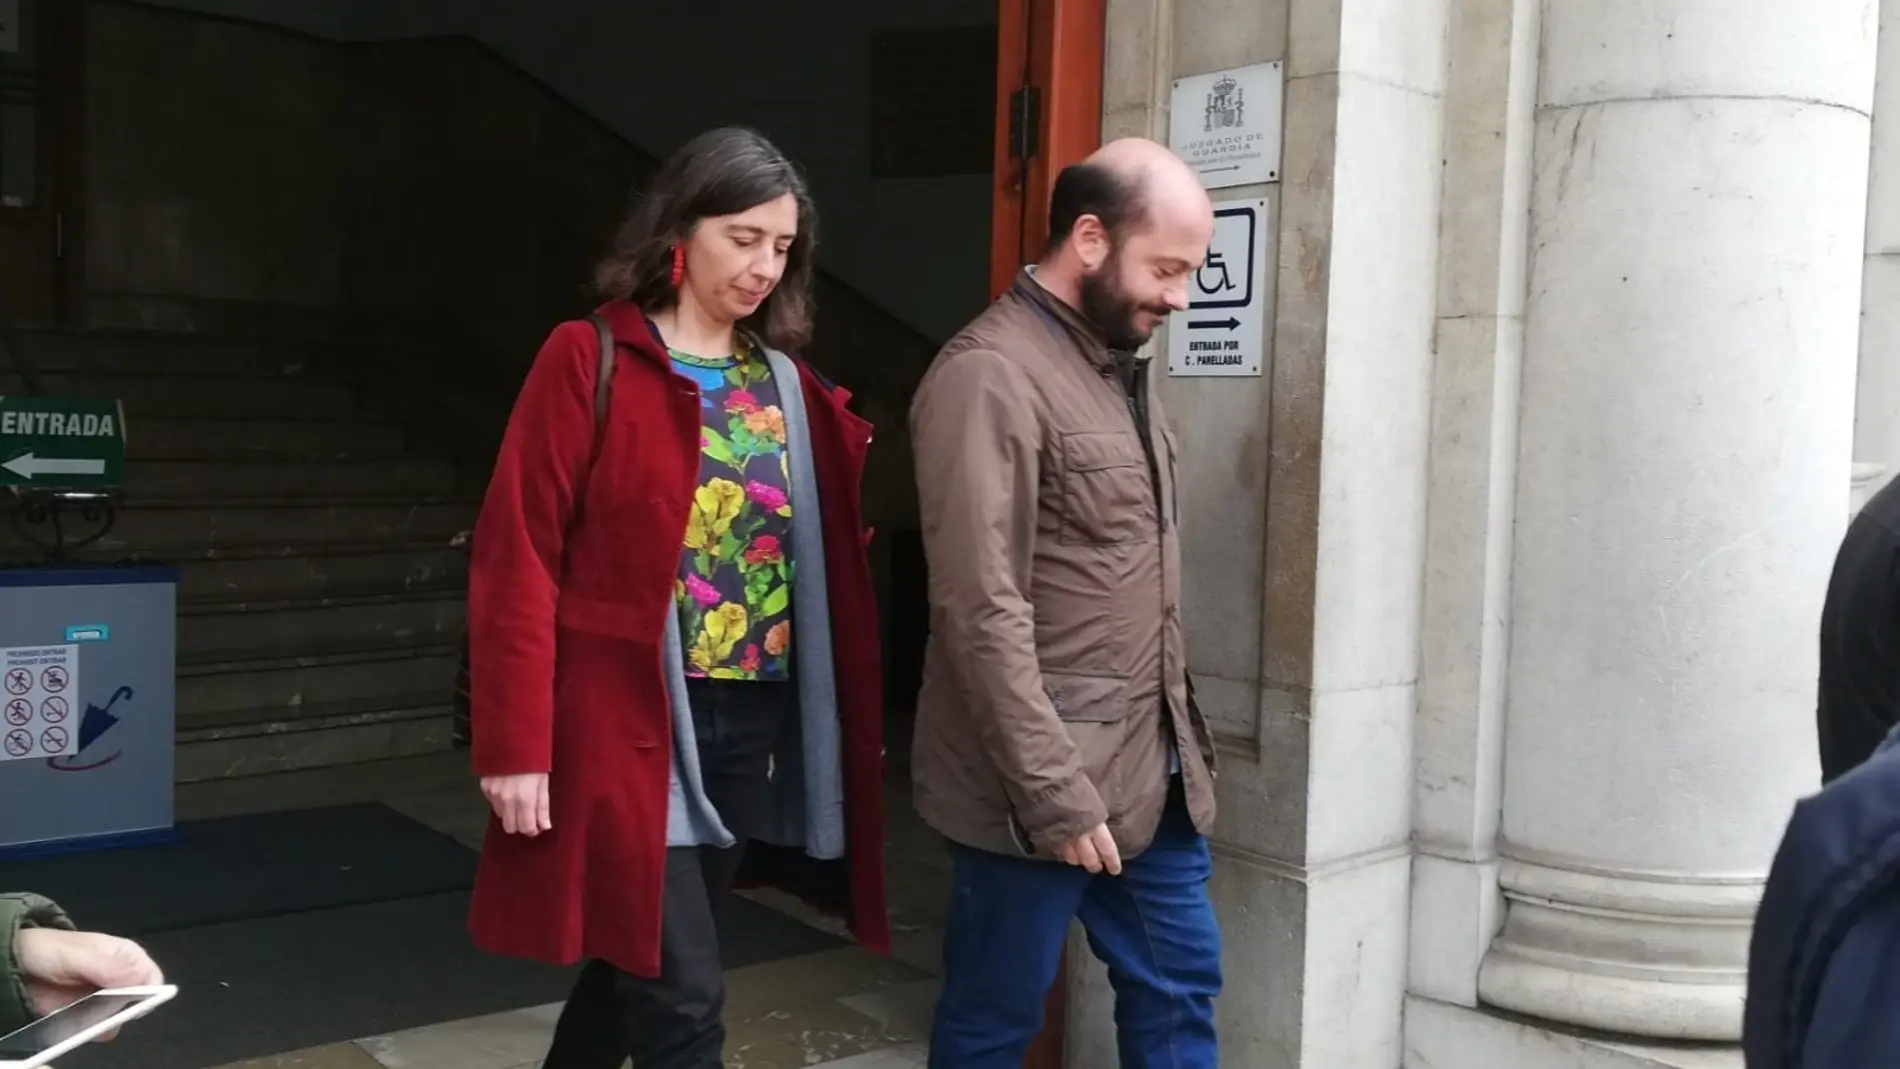 La expresidenta de Emaya, Neus Truyol, saliendo del juzgado tras declarar por la investigación sobre los vertidos de aguas fecales a la Bahía de Palma